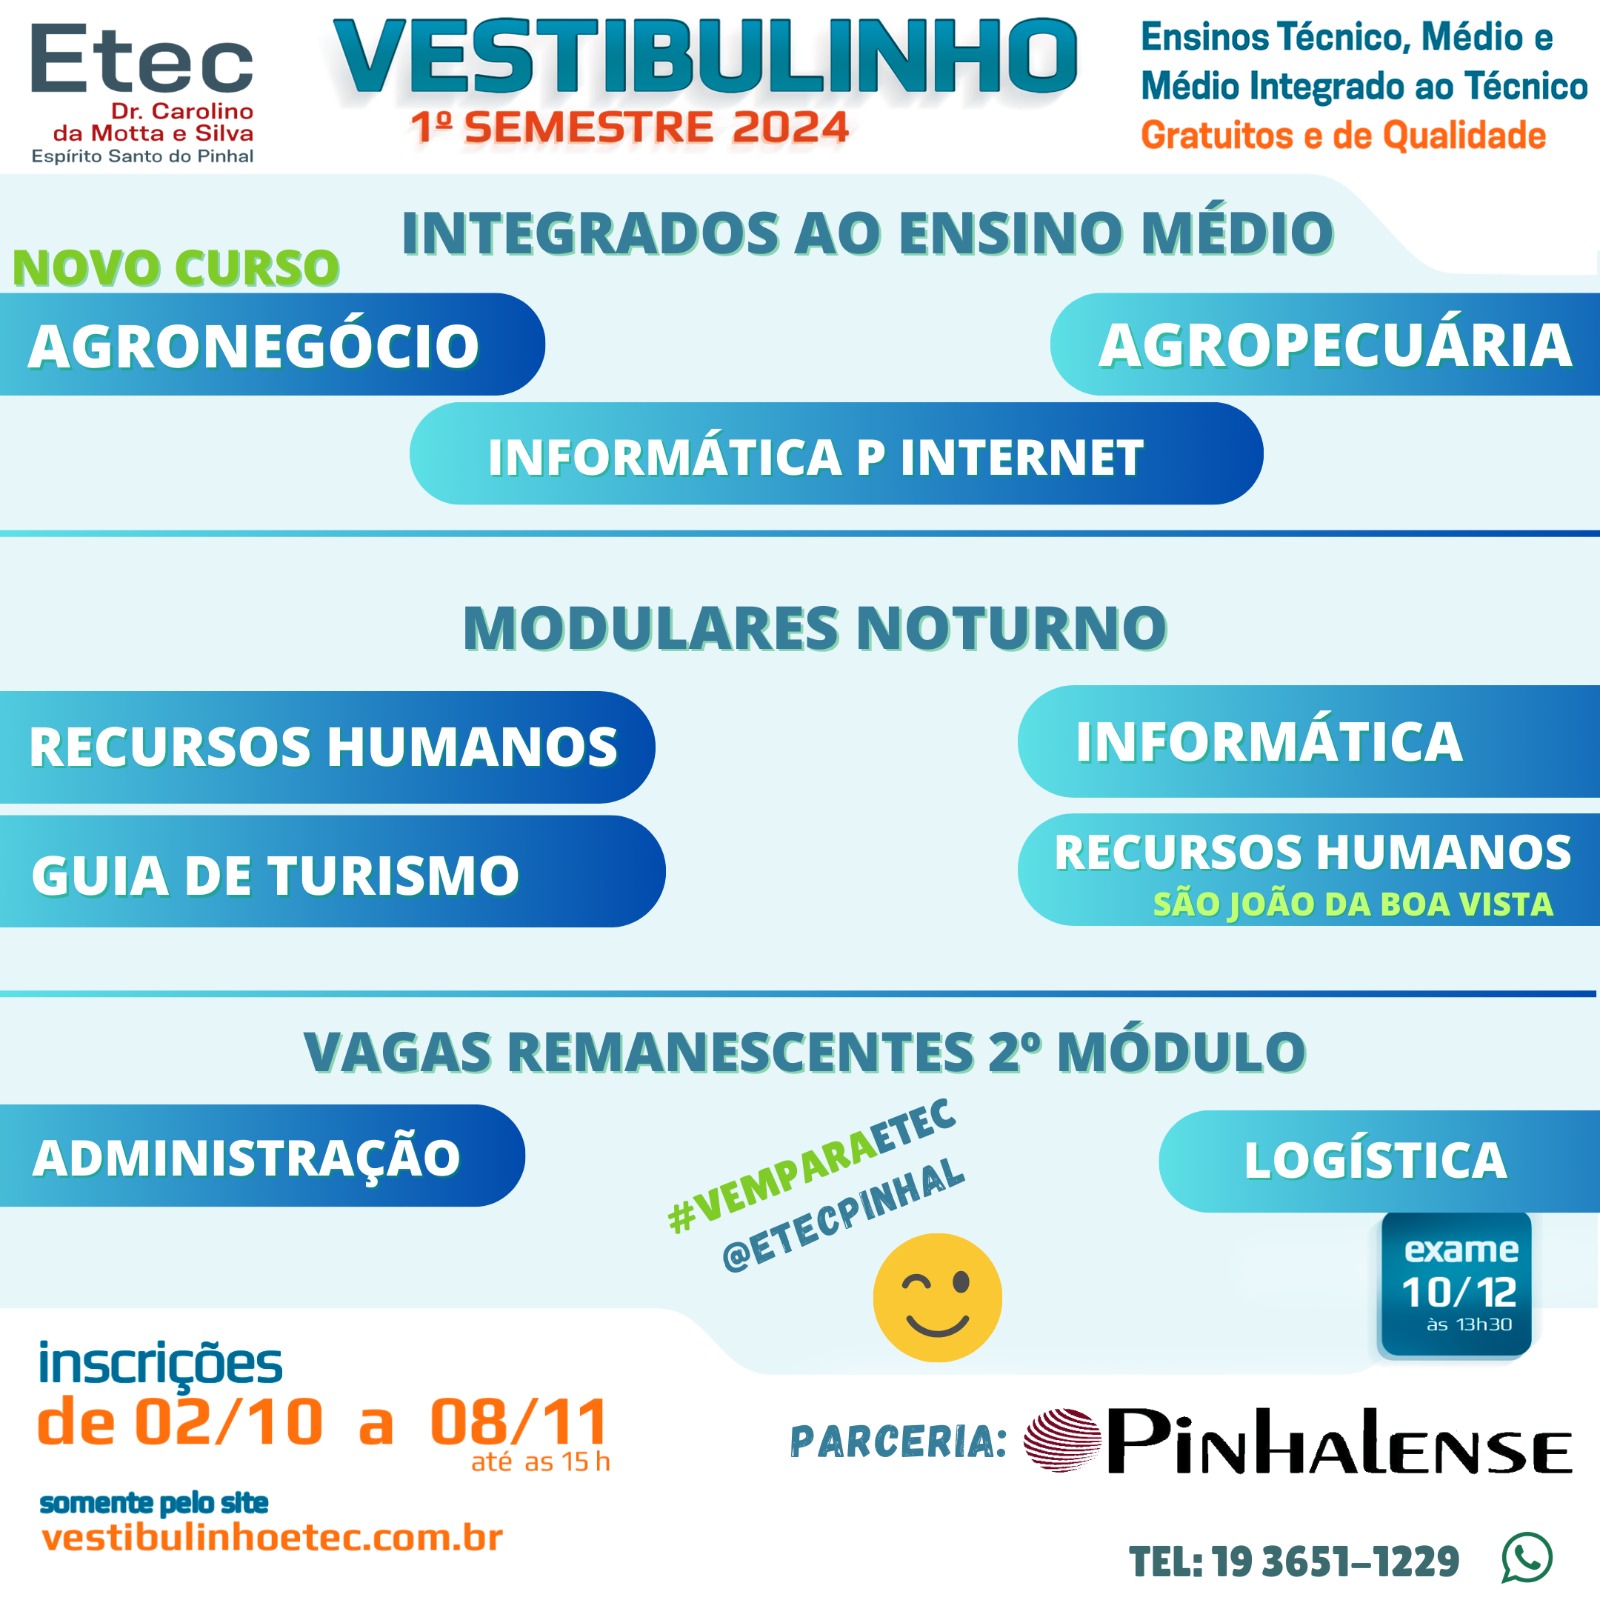 Vestibulinho ETEC – ETEC DR. CAROLINO DA MOTTA E SILVA